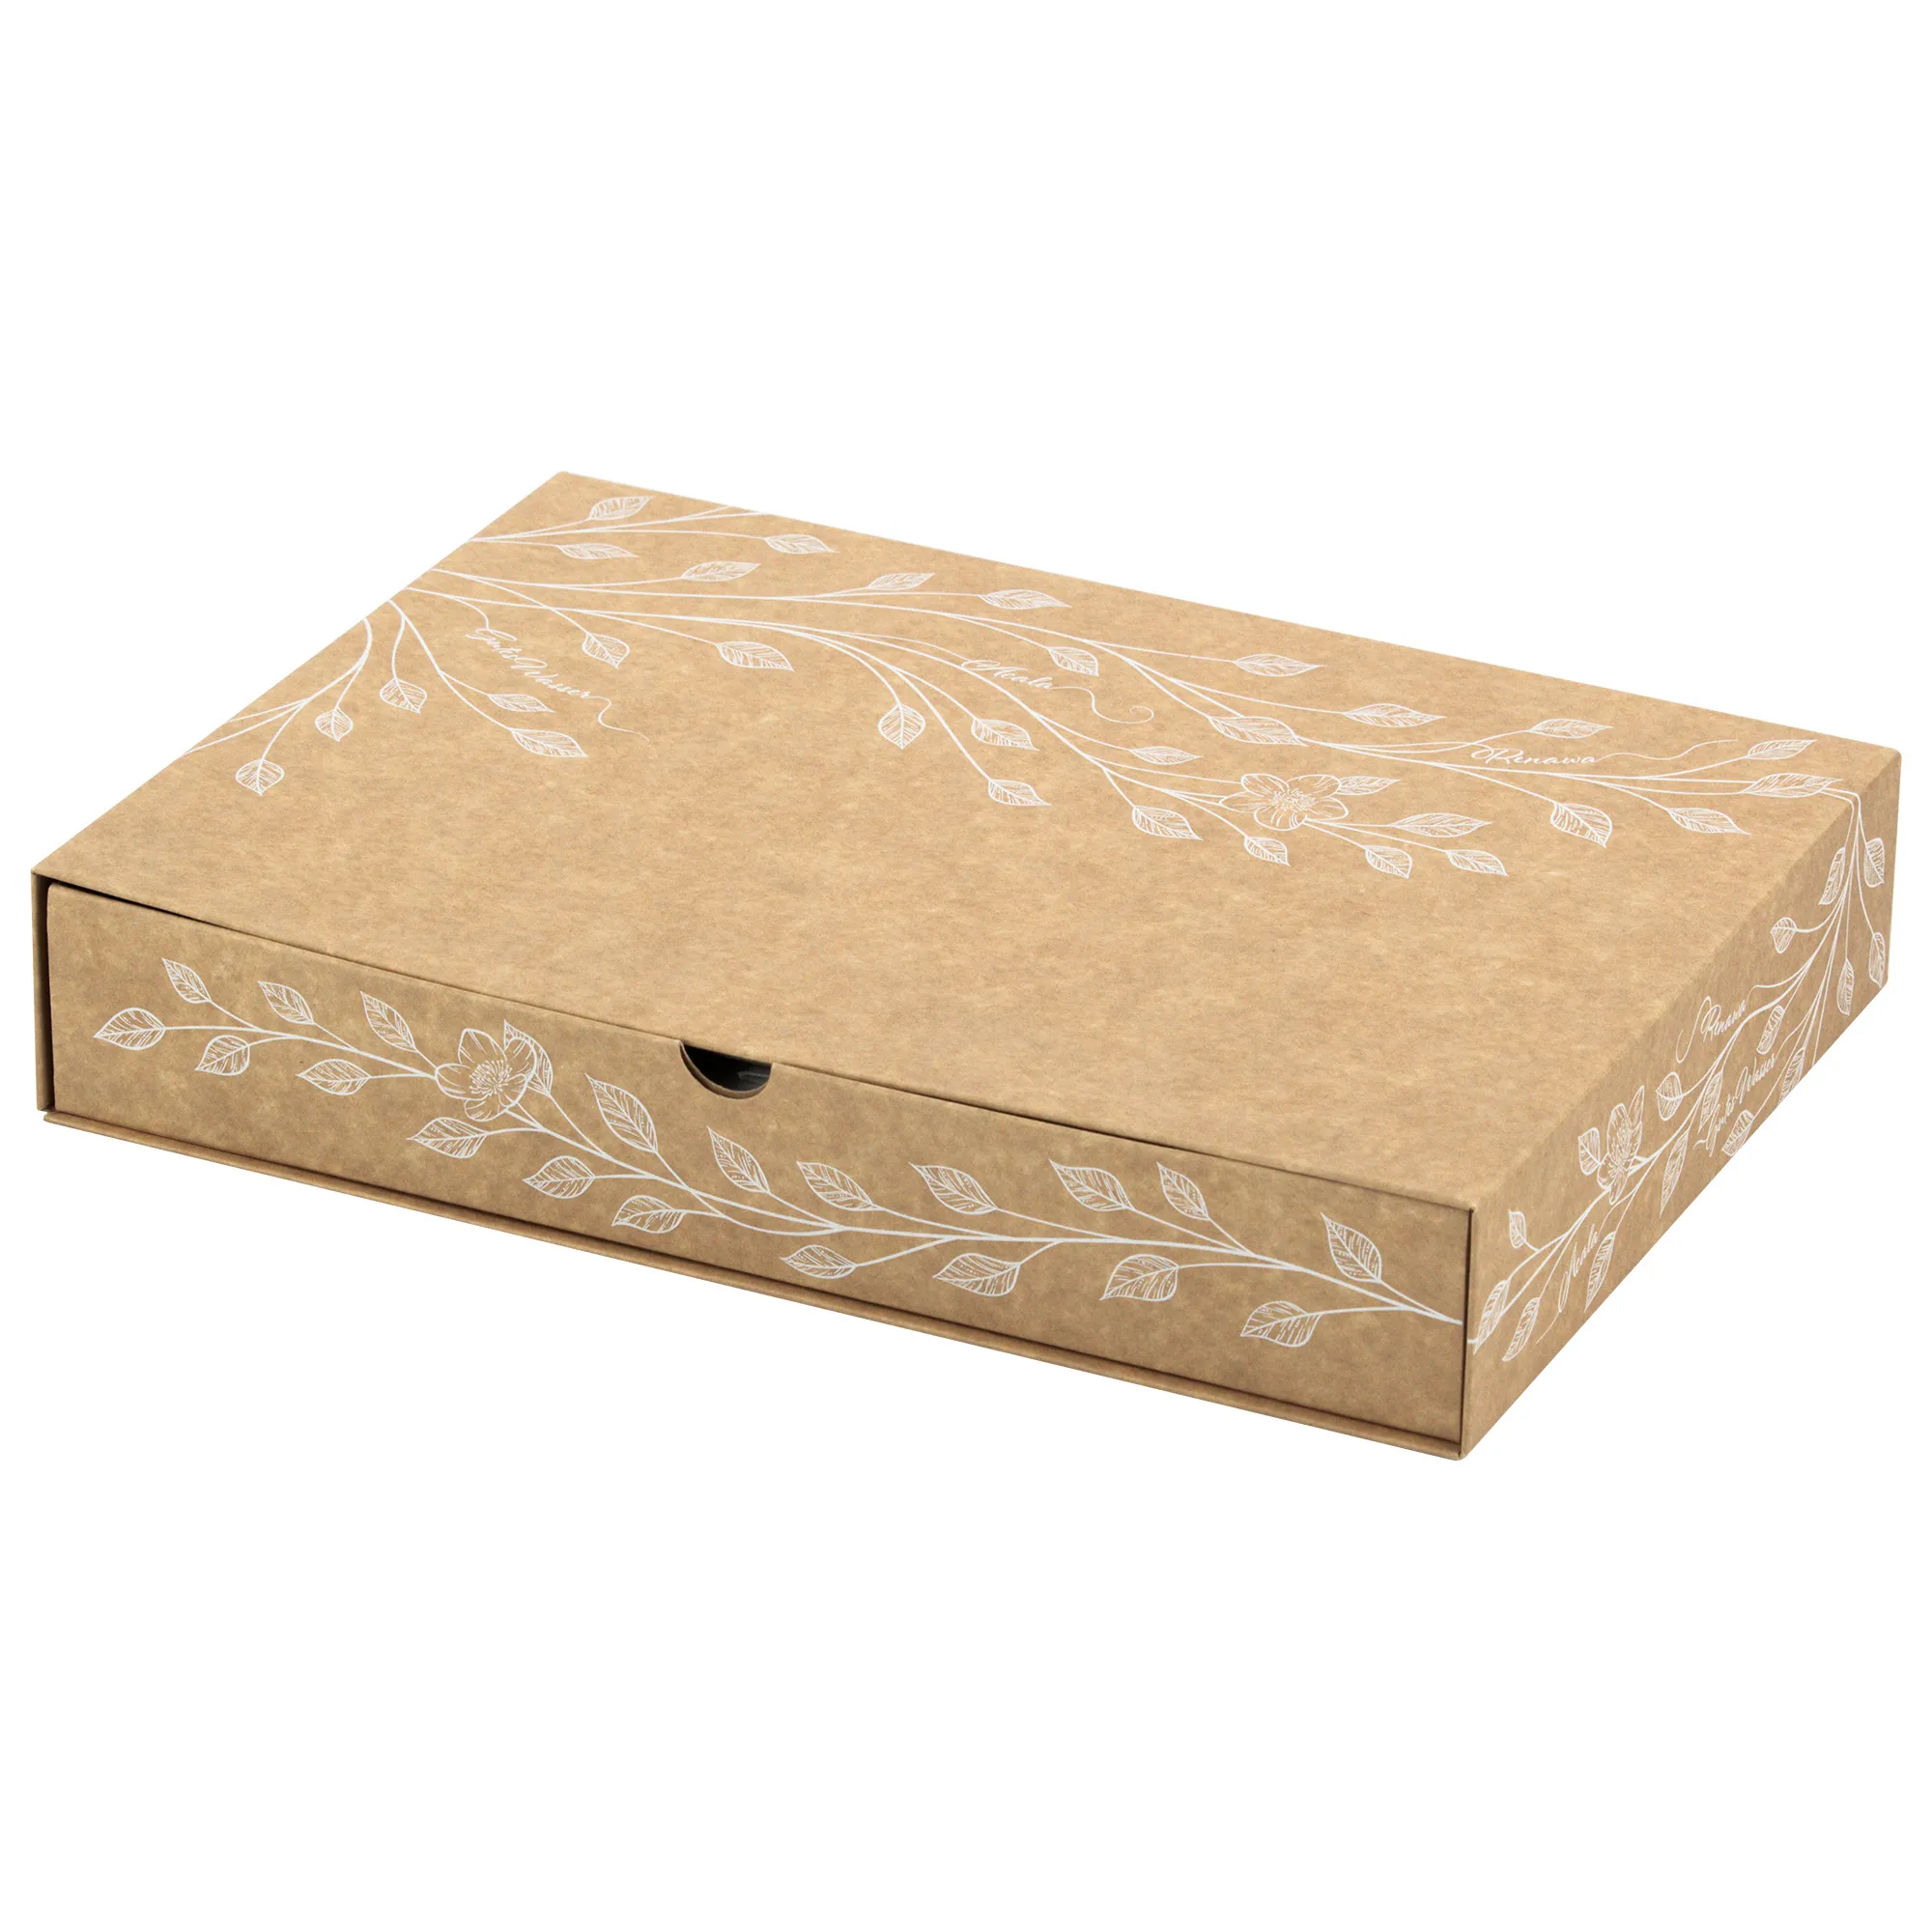 Man sieht die Verpackung für die ReNaWa Nachfüll-Komponenten für 1 Jahr. Der Karton ist Naturbraun, bedruckt mit weißen Blätterranken und Infos zum Inhalt.